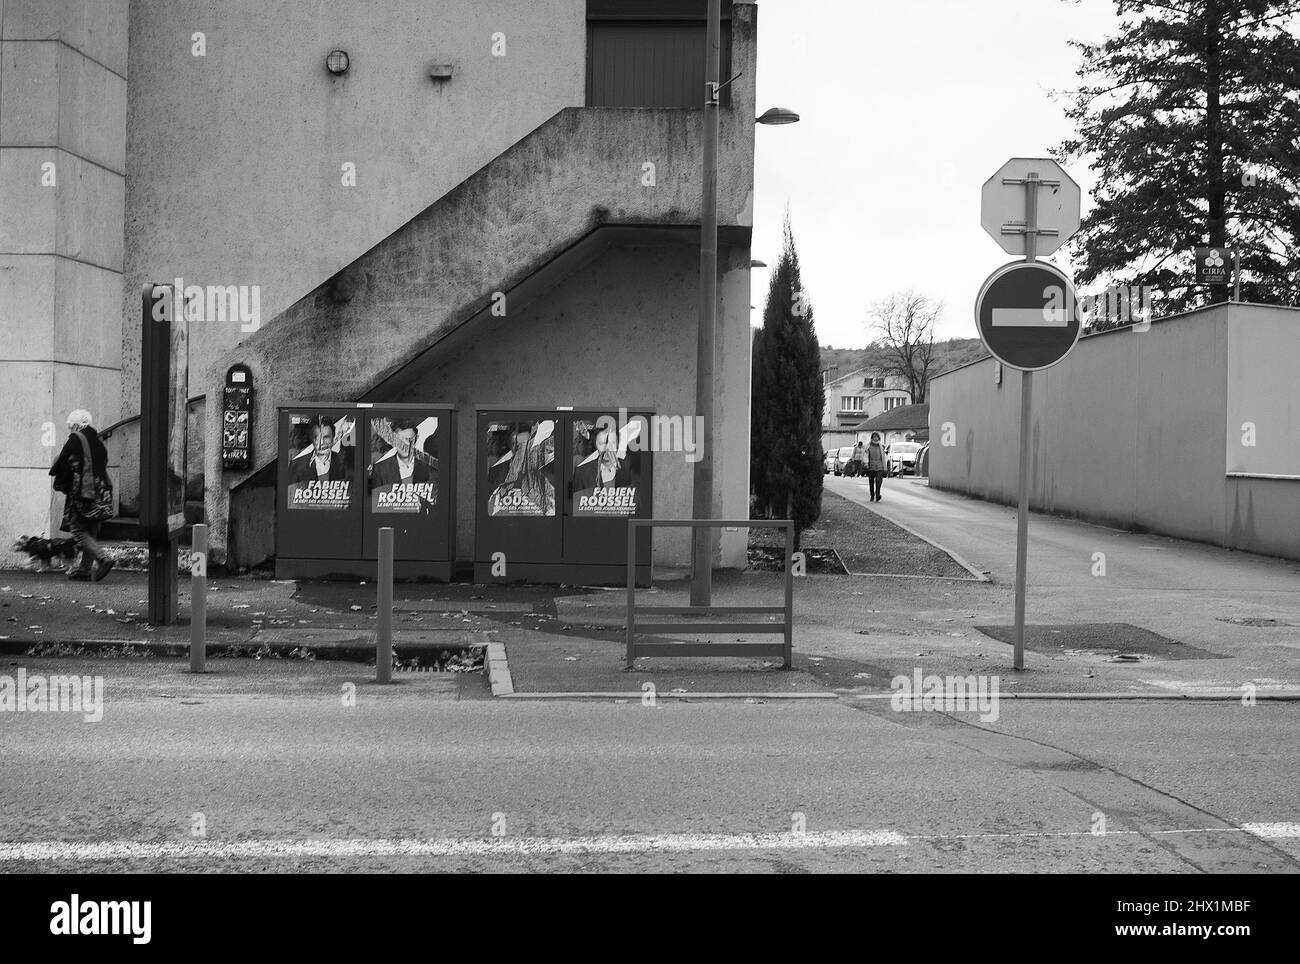 Affiches défacées pour Fabien Roussel, rue de la barre, Cahors, département du Lot, sud-ouest de la France Banque D'Images